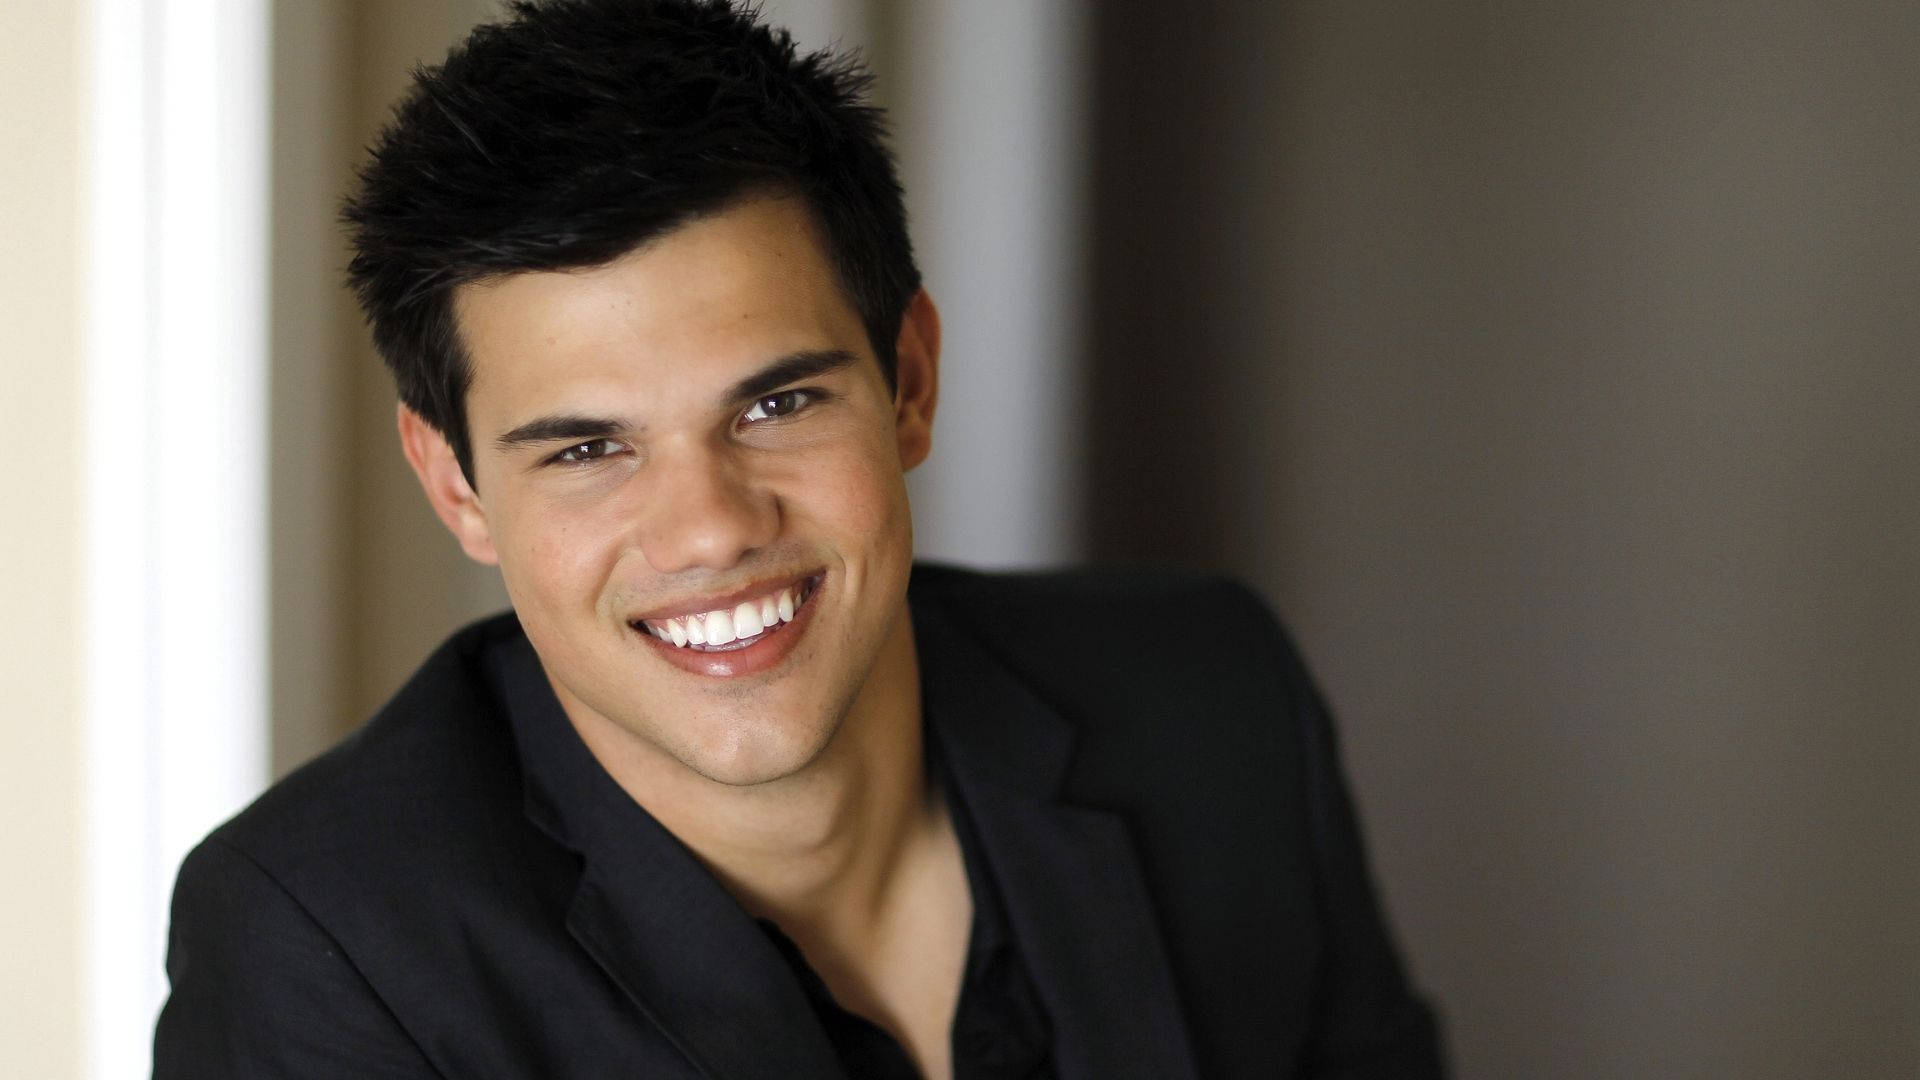 Taylor Lautner Wide Smile Background